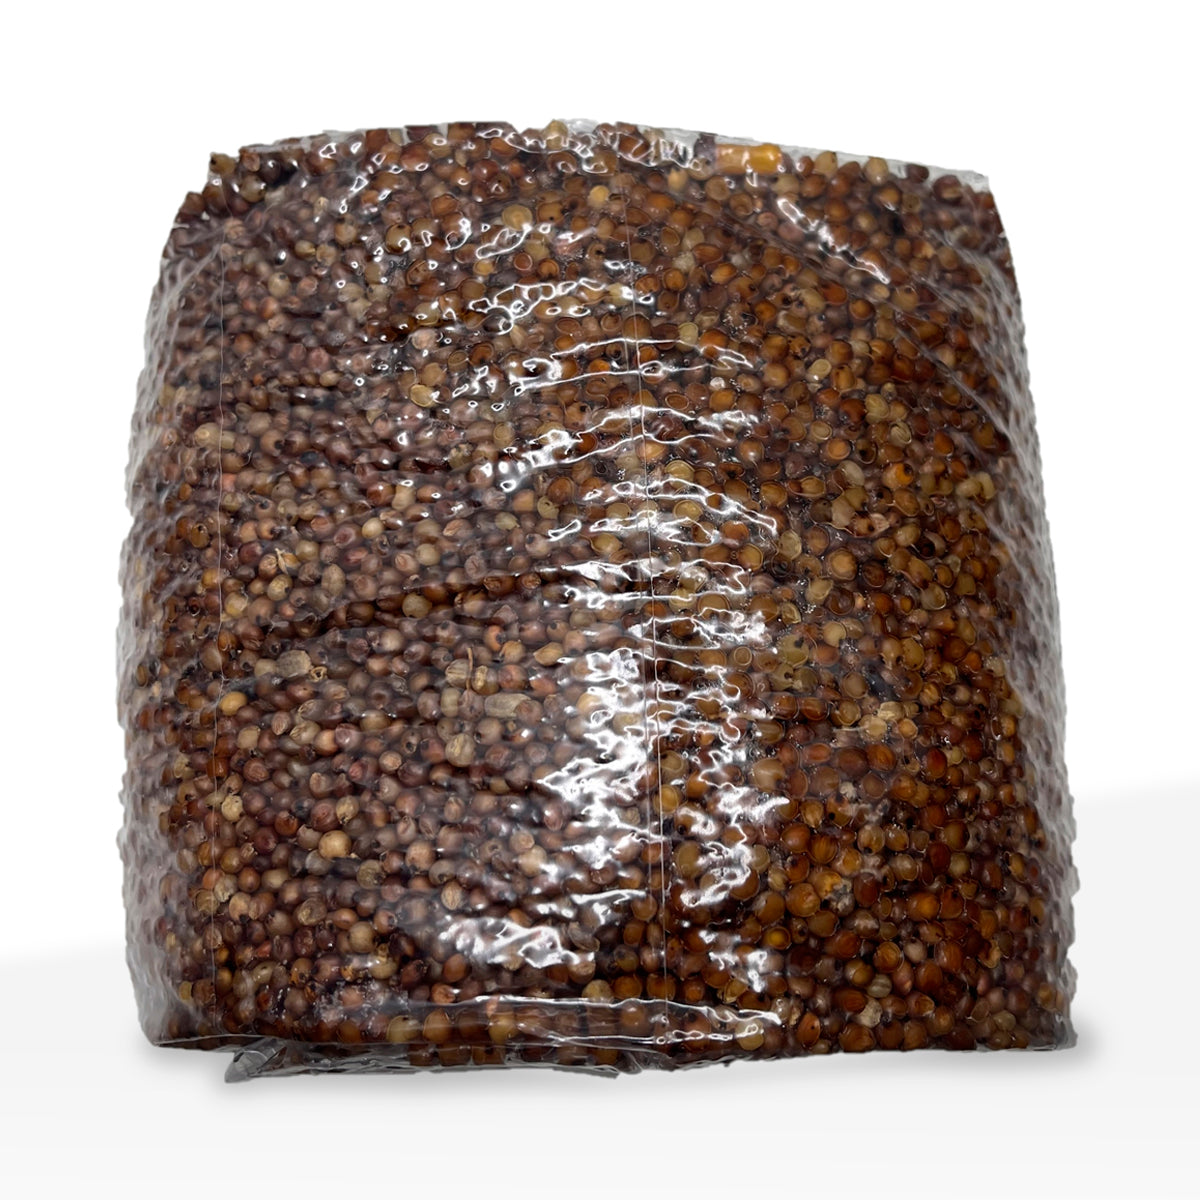 Milo Grain | Sterilized Mushroom Grain | 5lb Bag